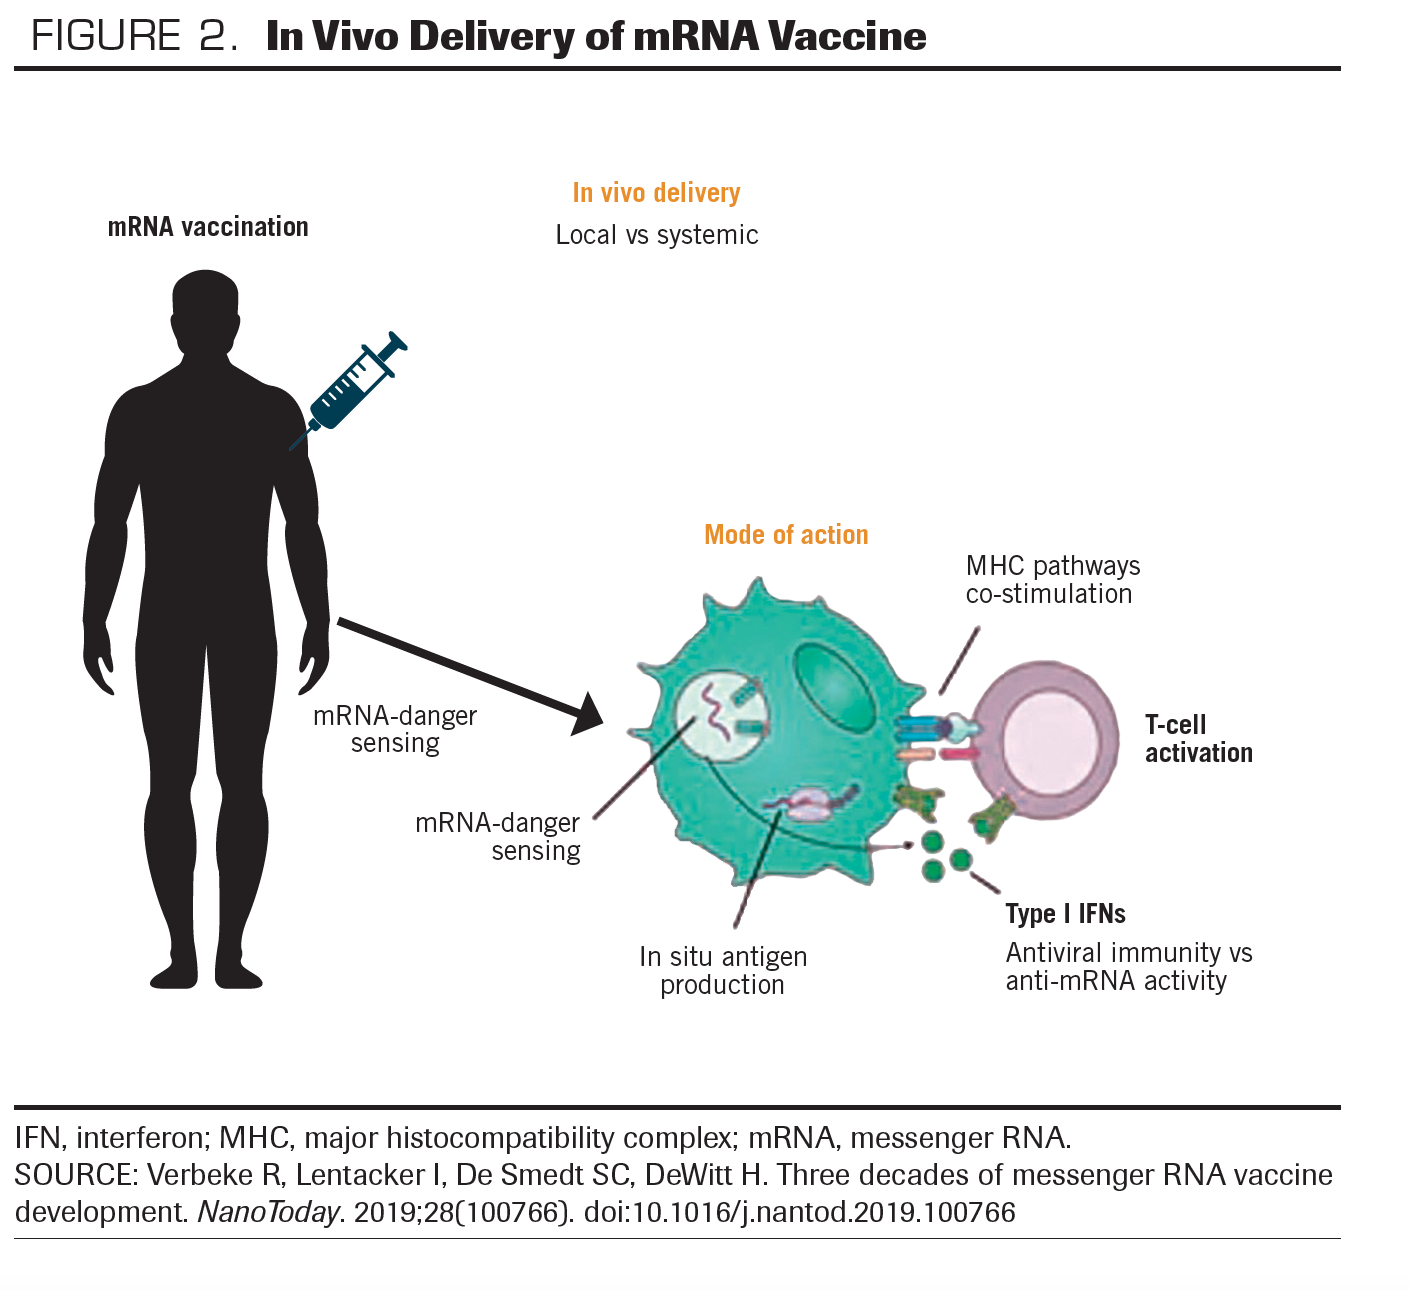 FIGURE 2. In Vivo Delivery of mRNA Vaccine